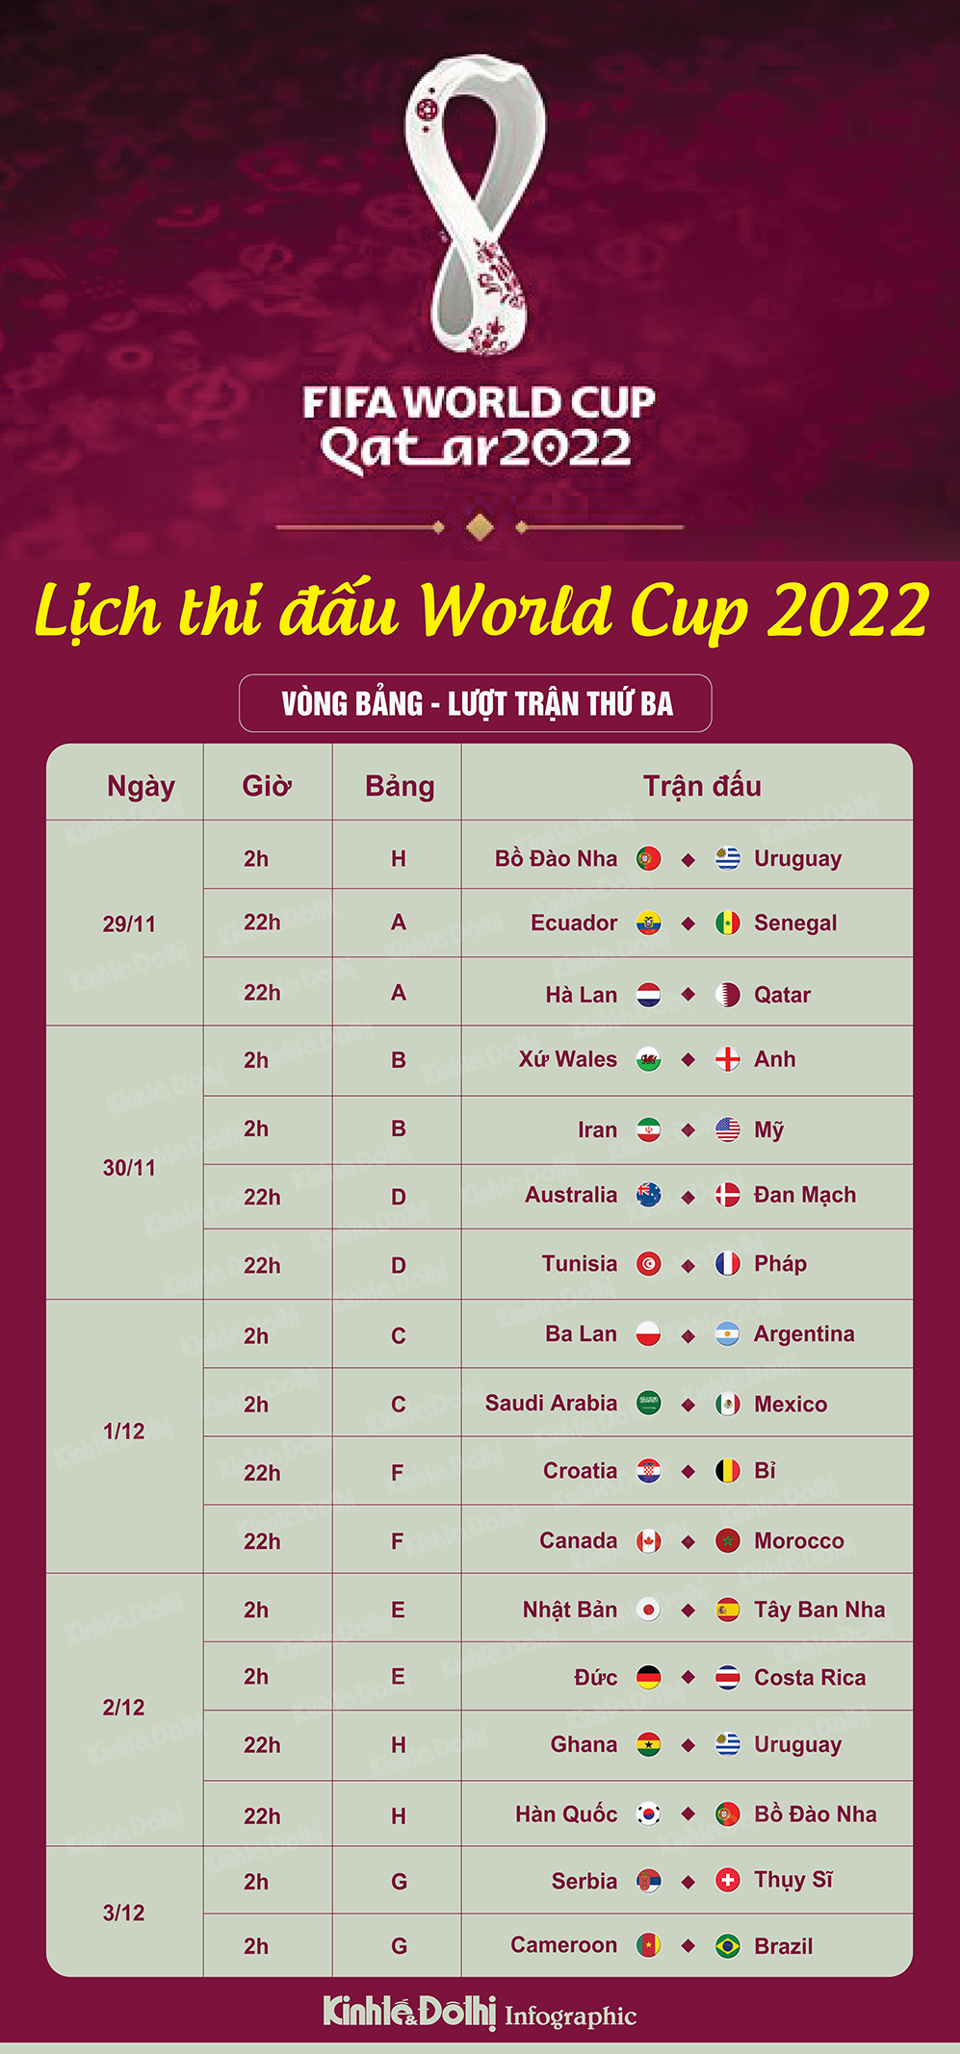 Lịch thi đấu World Cup 2022 ngày 1/12: Kevin de Bruyne giúp tuyển Bỉ vượt khó? - Ảnh 1